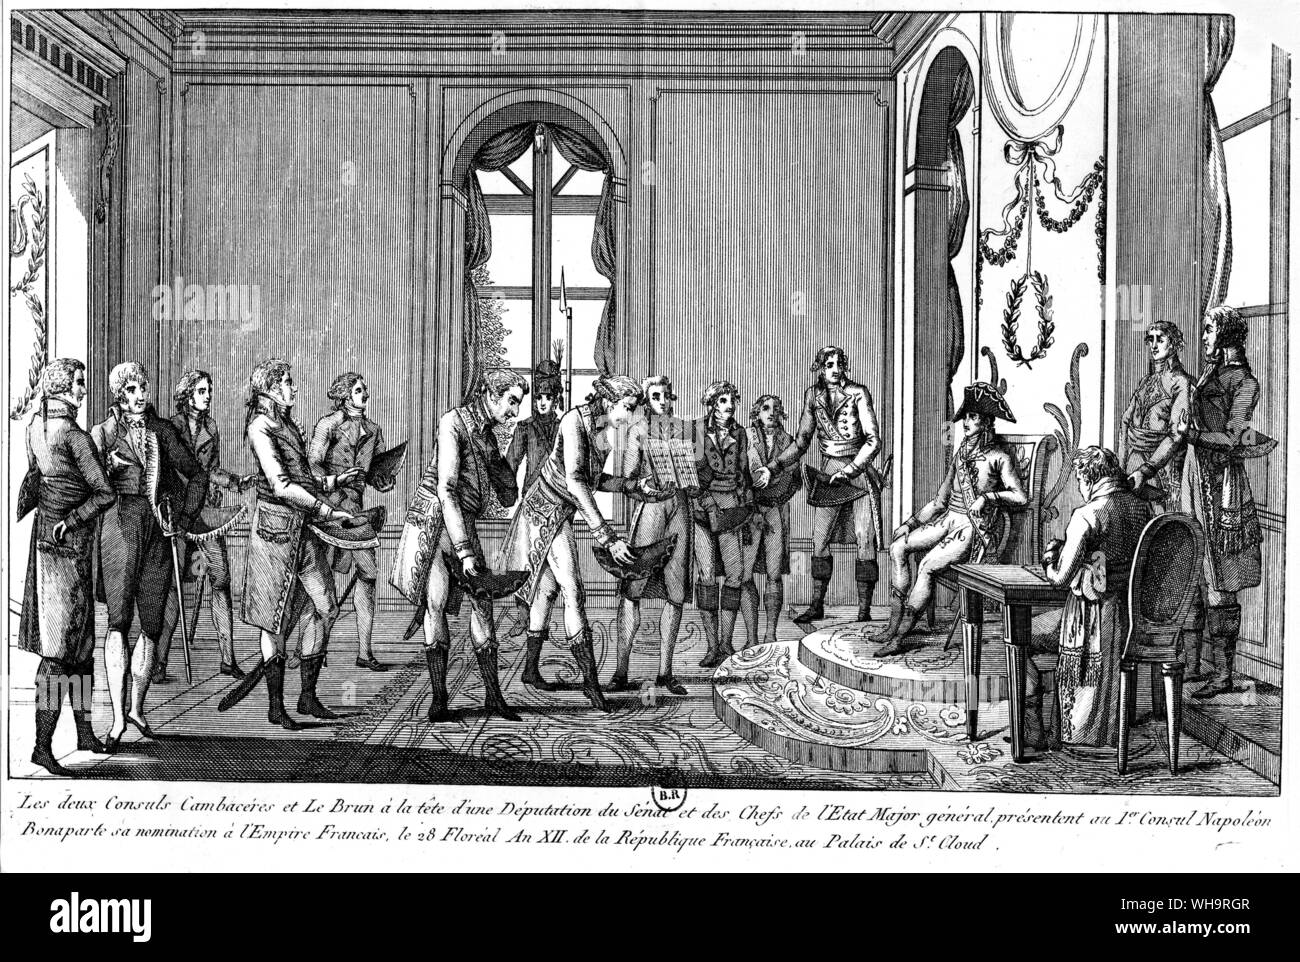 Napoleon Bonaparte meets with Depututation du Sendt and the Chefs de L'Etats Major in 1812. Palais St Cloud. Stock Photo